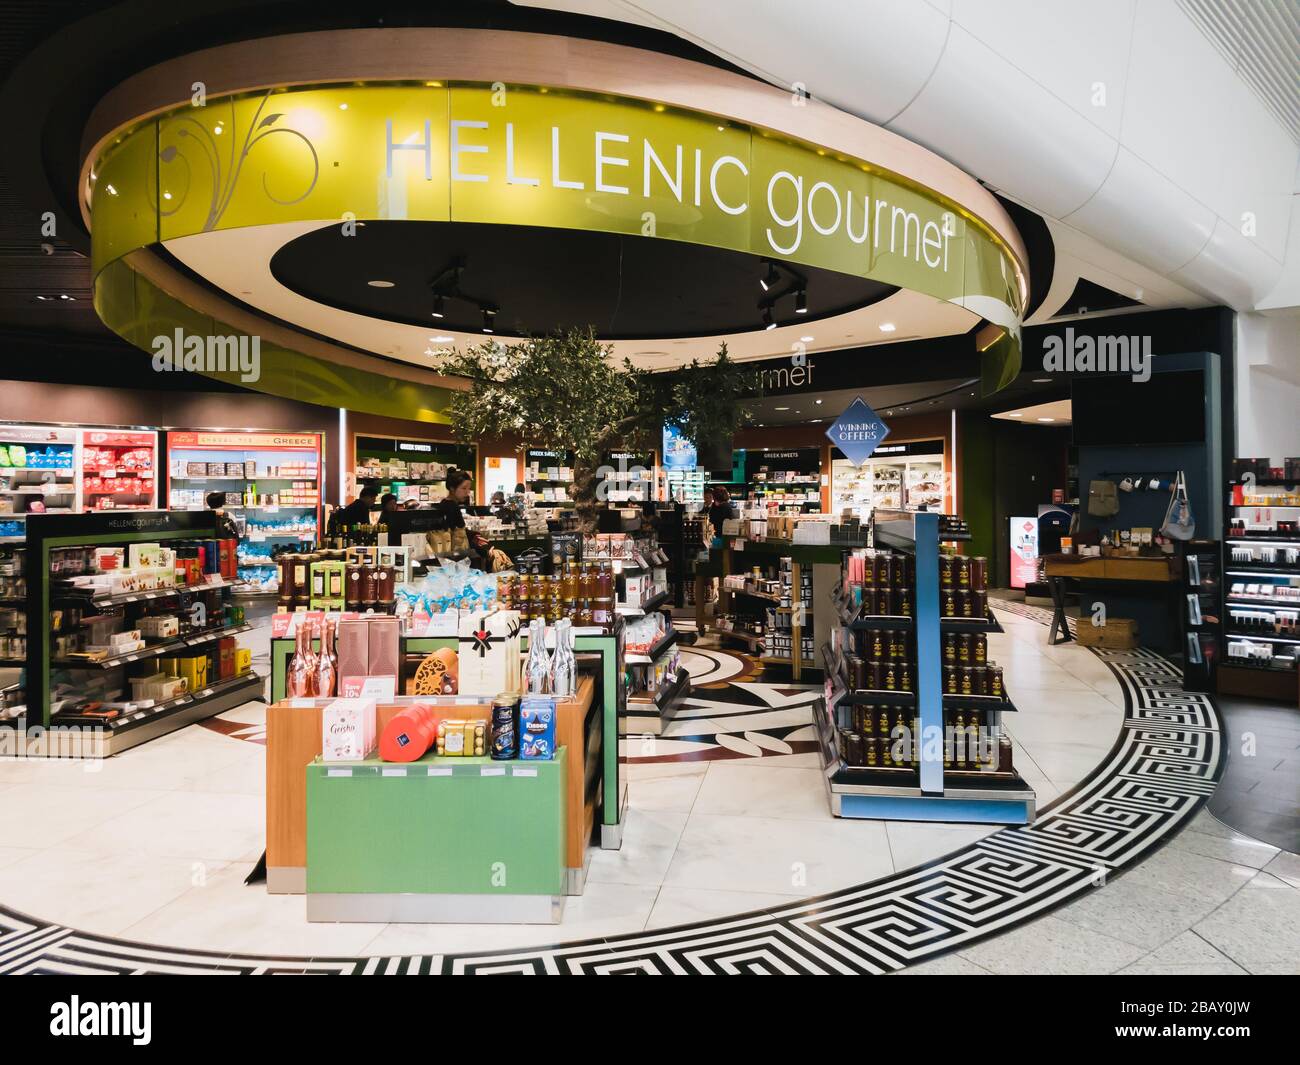 Athen, Griechenland - Februar 11 2020: Hellenic Duty Free Shops mit Hellenic Gourmet Shop mit verschiedenen griechischen Produkten in Athens International Stockfoto